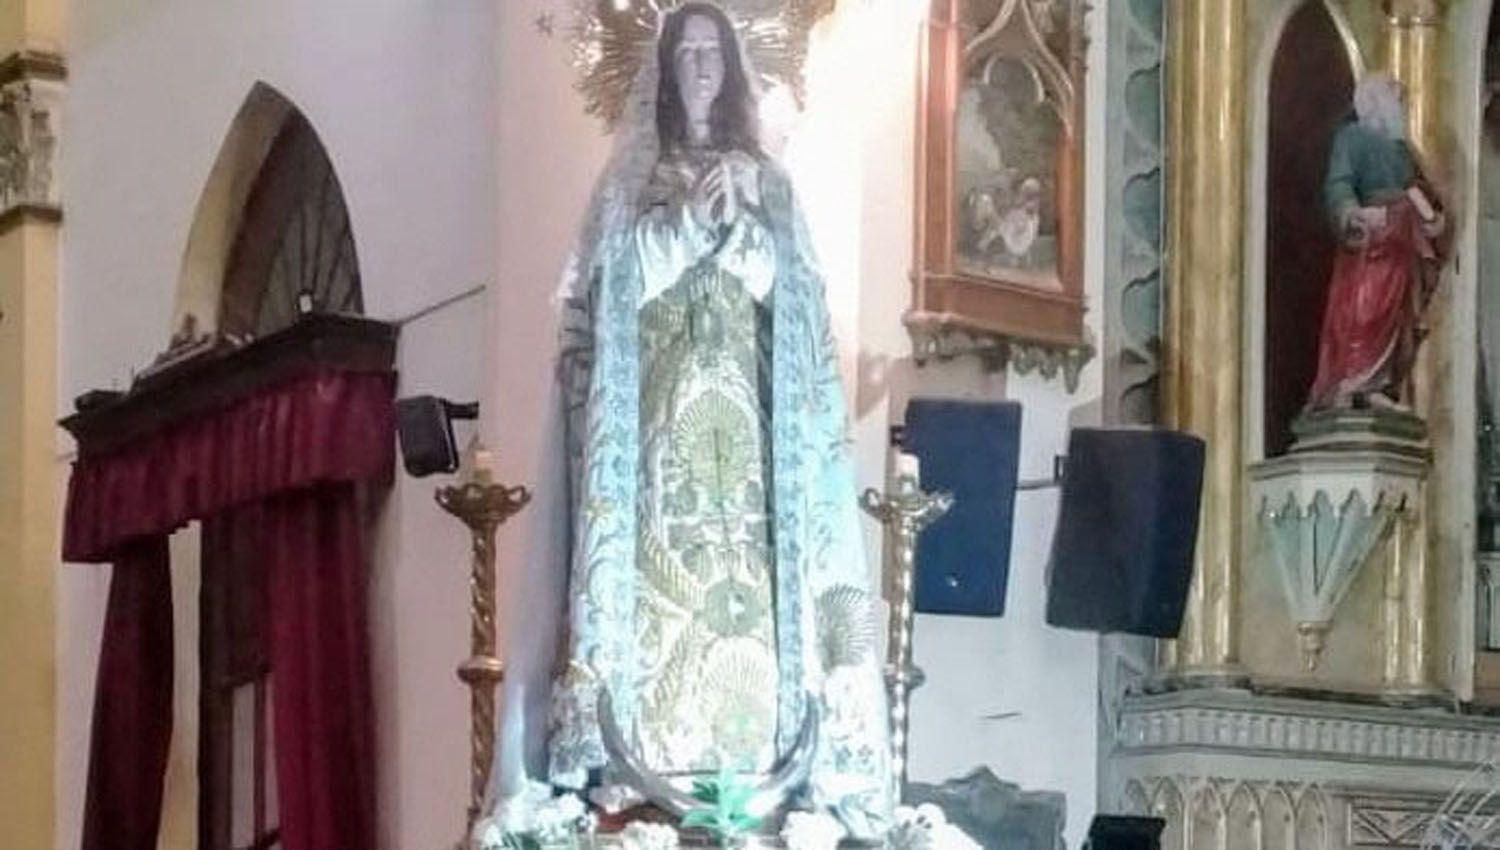 Habr� una misa y posterior procesión con la Inmaculada Concepción